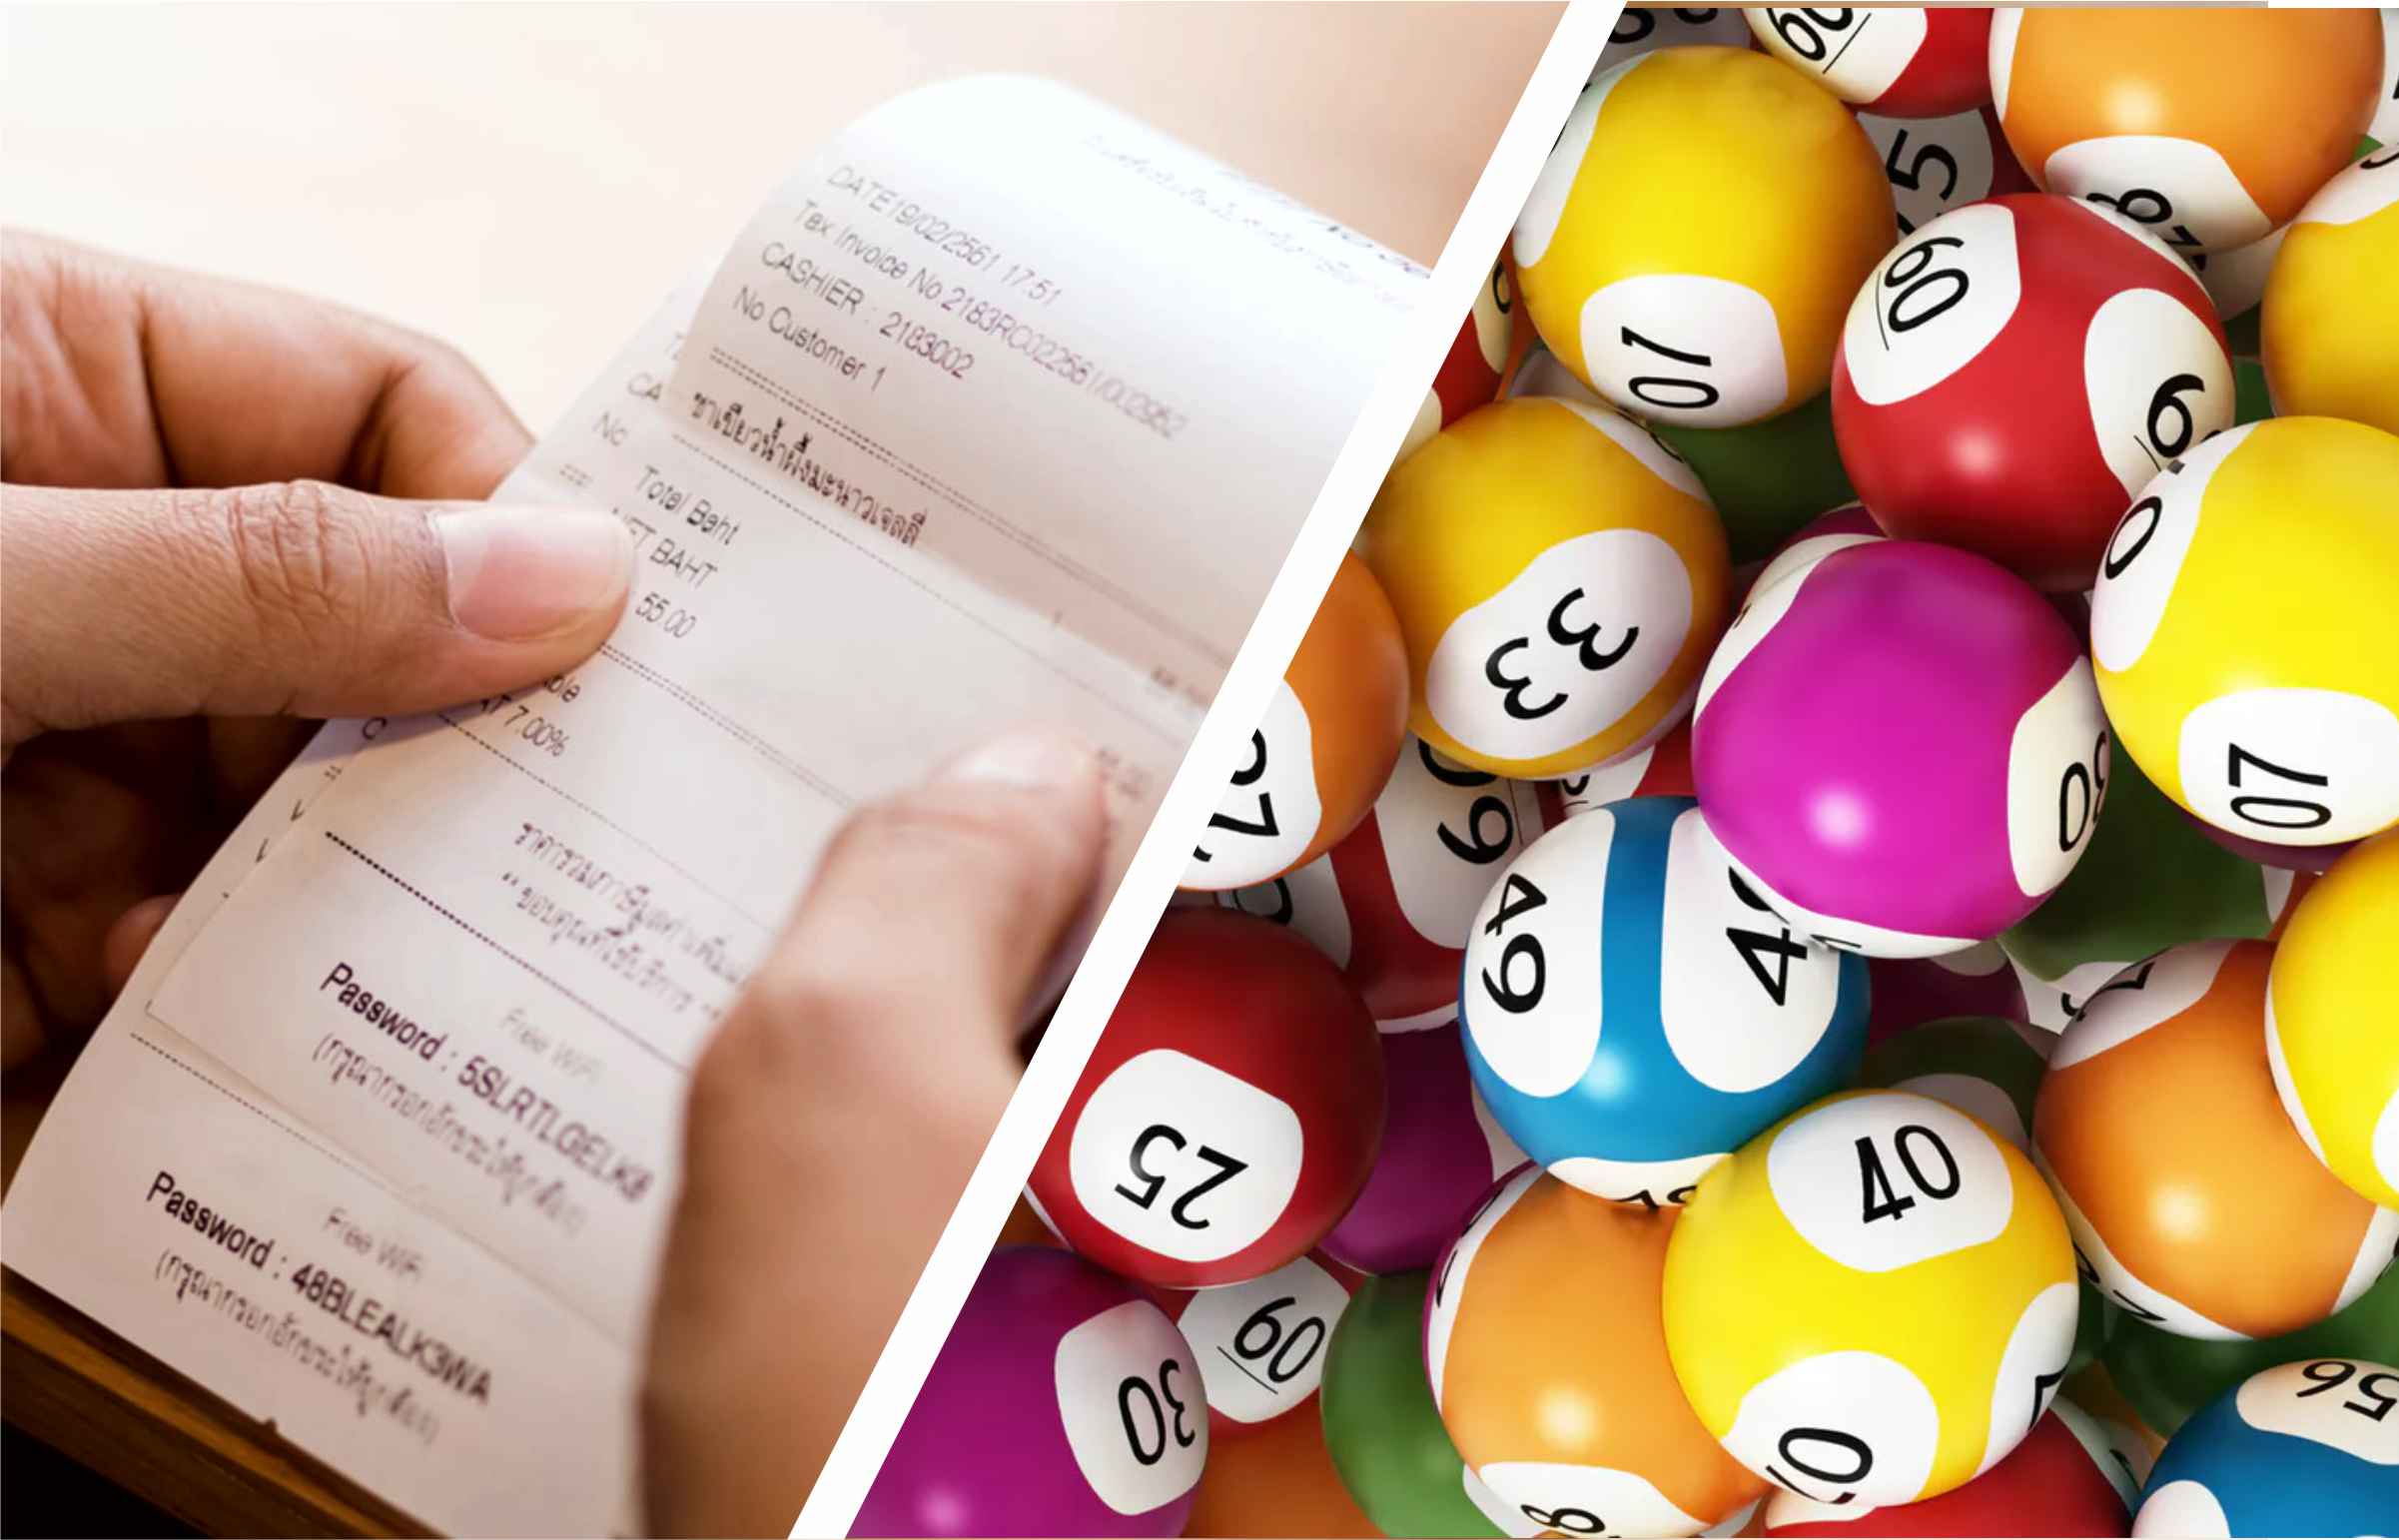 Arriva la Lotteria degli scontrini 2020: ecco Come funzionerà